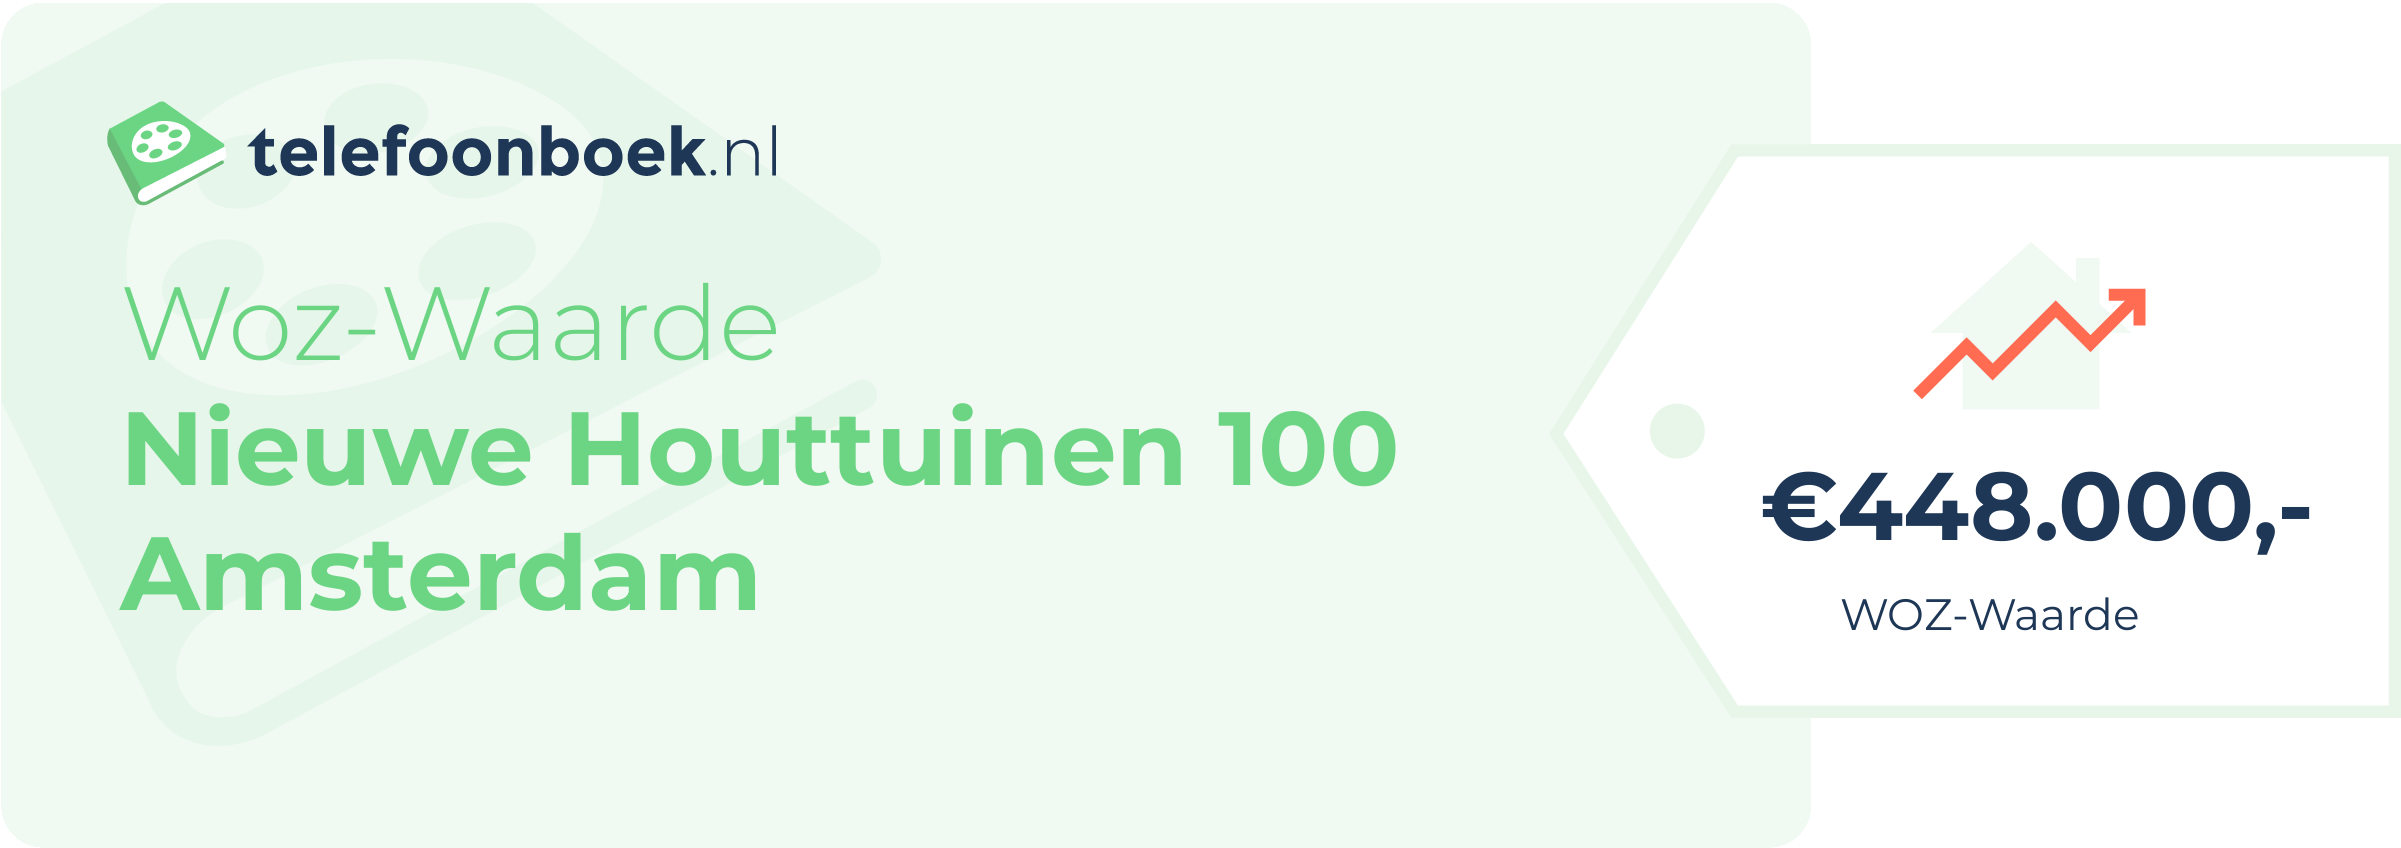 WOZ-waarde Nieuwe Houttuinen 100 Amsterdam